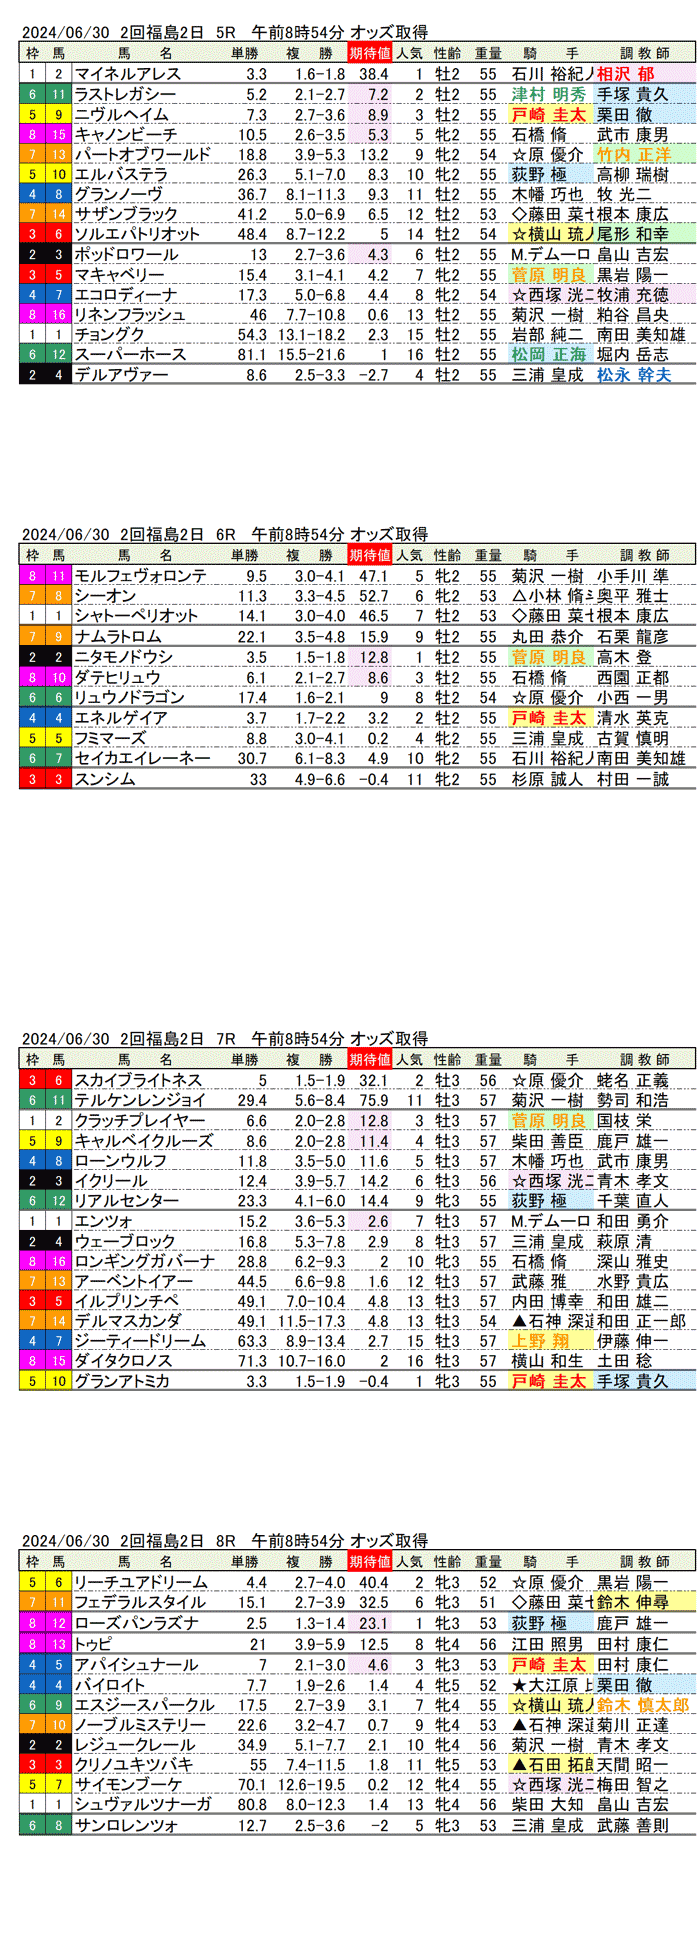 24年6月30日（日曜）期待値の公開 2回福島競馬2日目5R〜8R